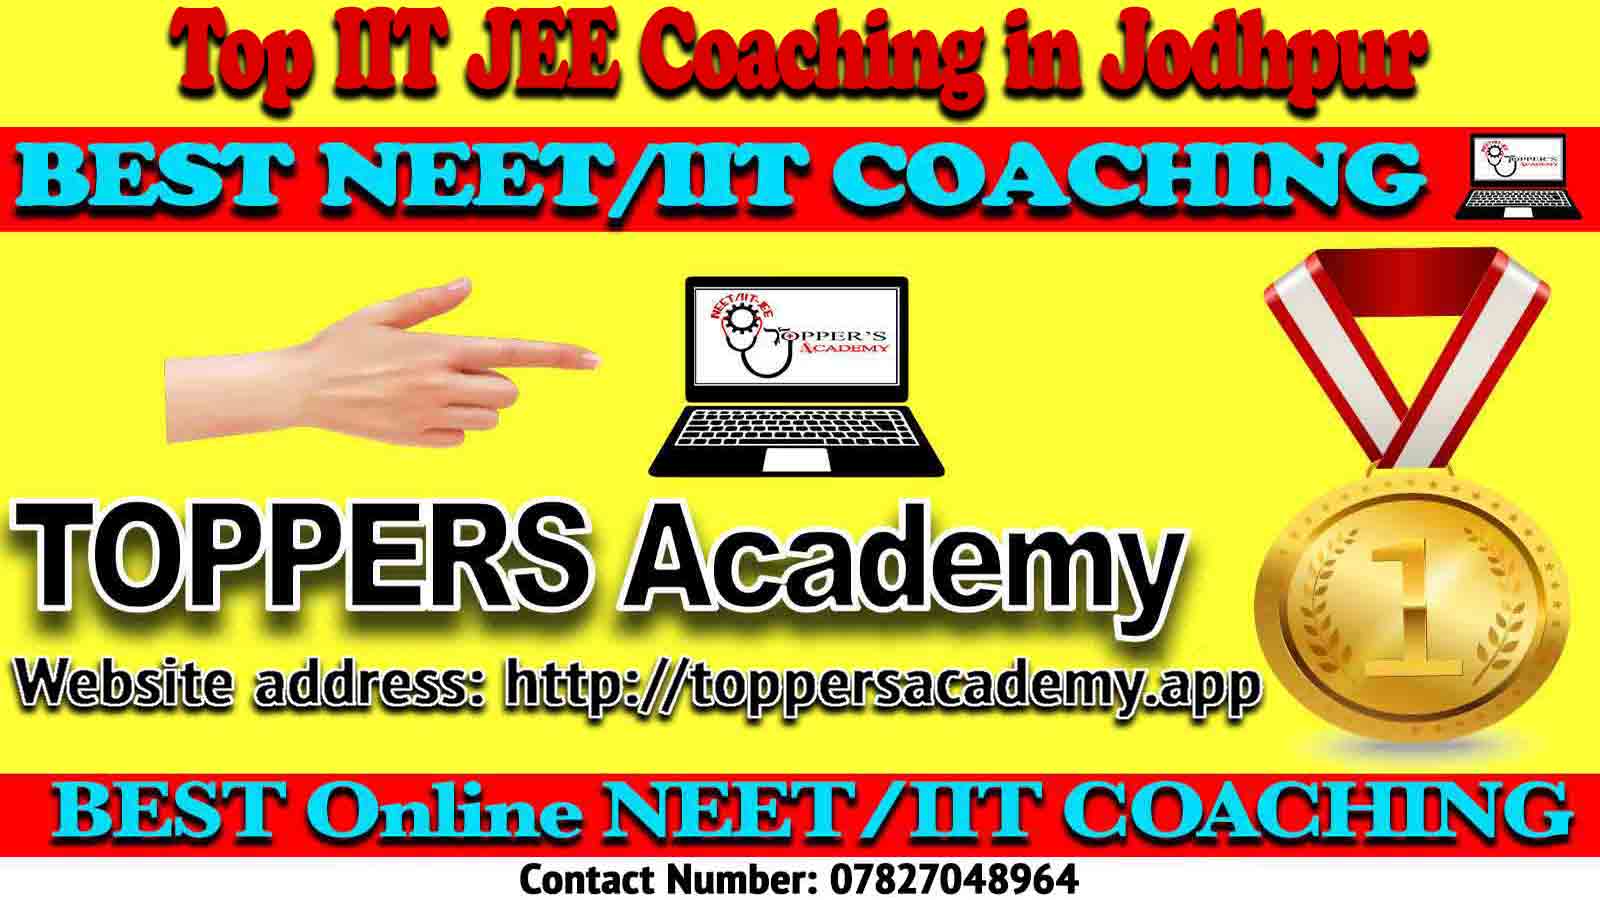 Best Online IIT JEE Coaching in Jodhpur